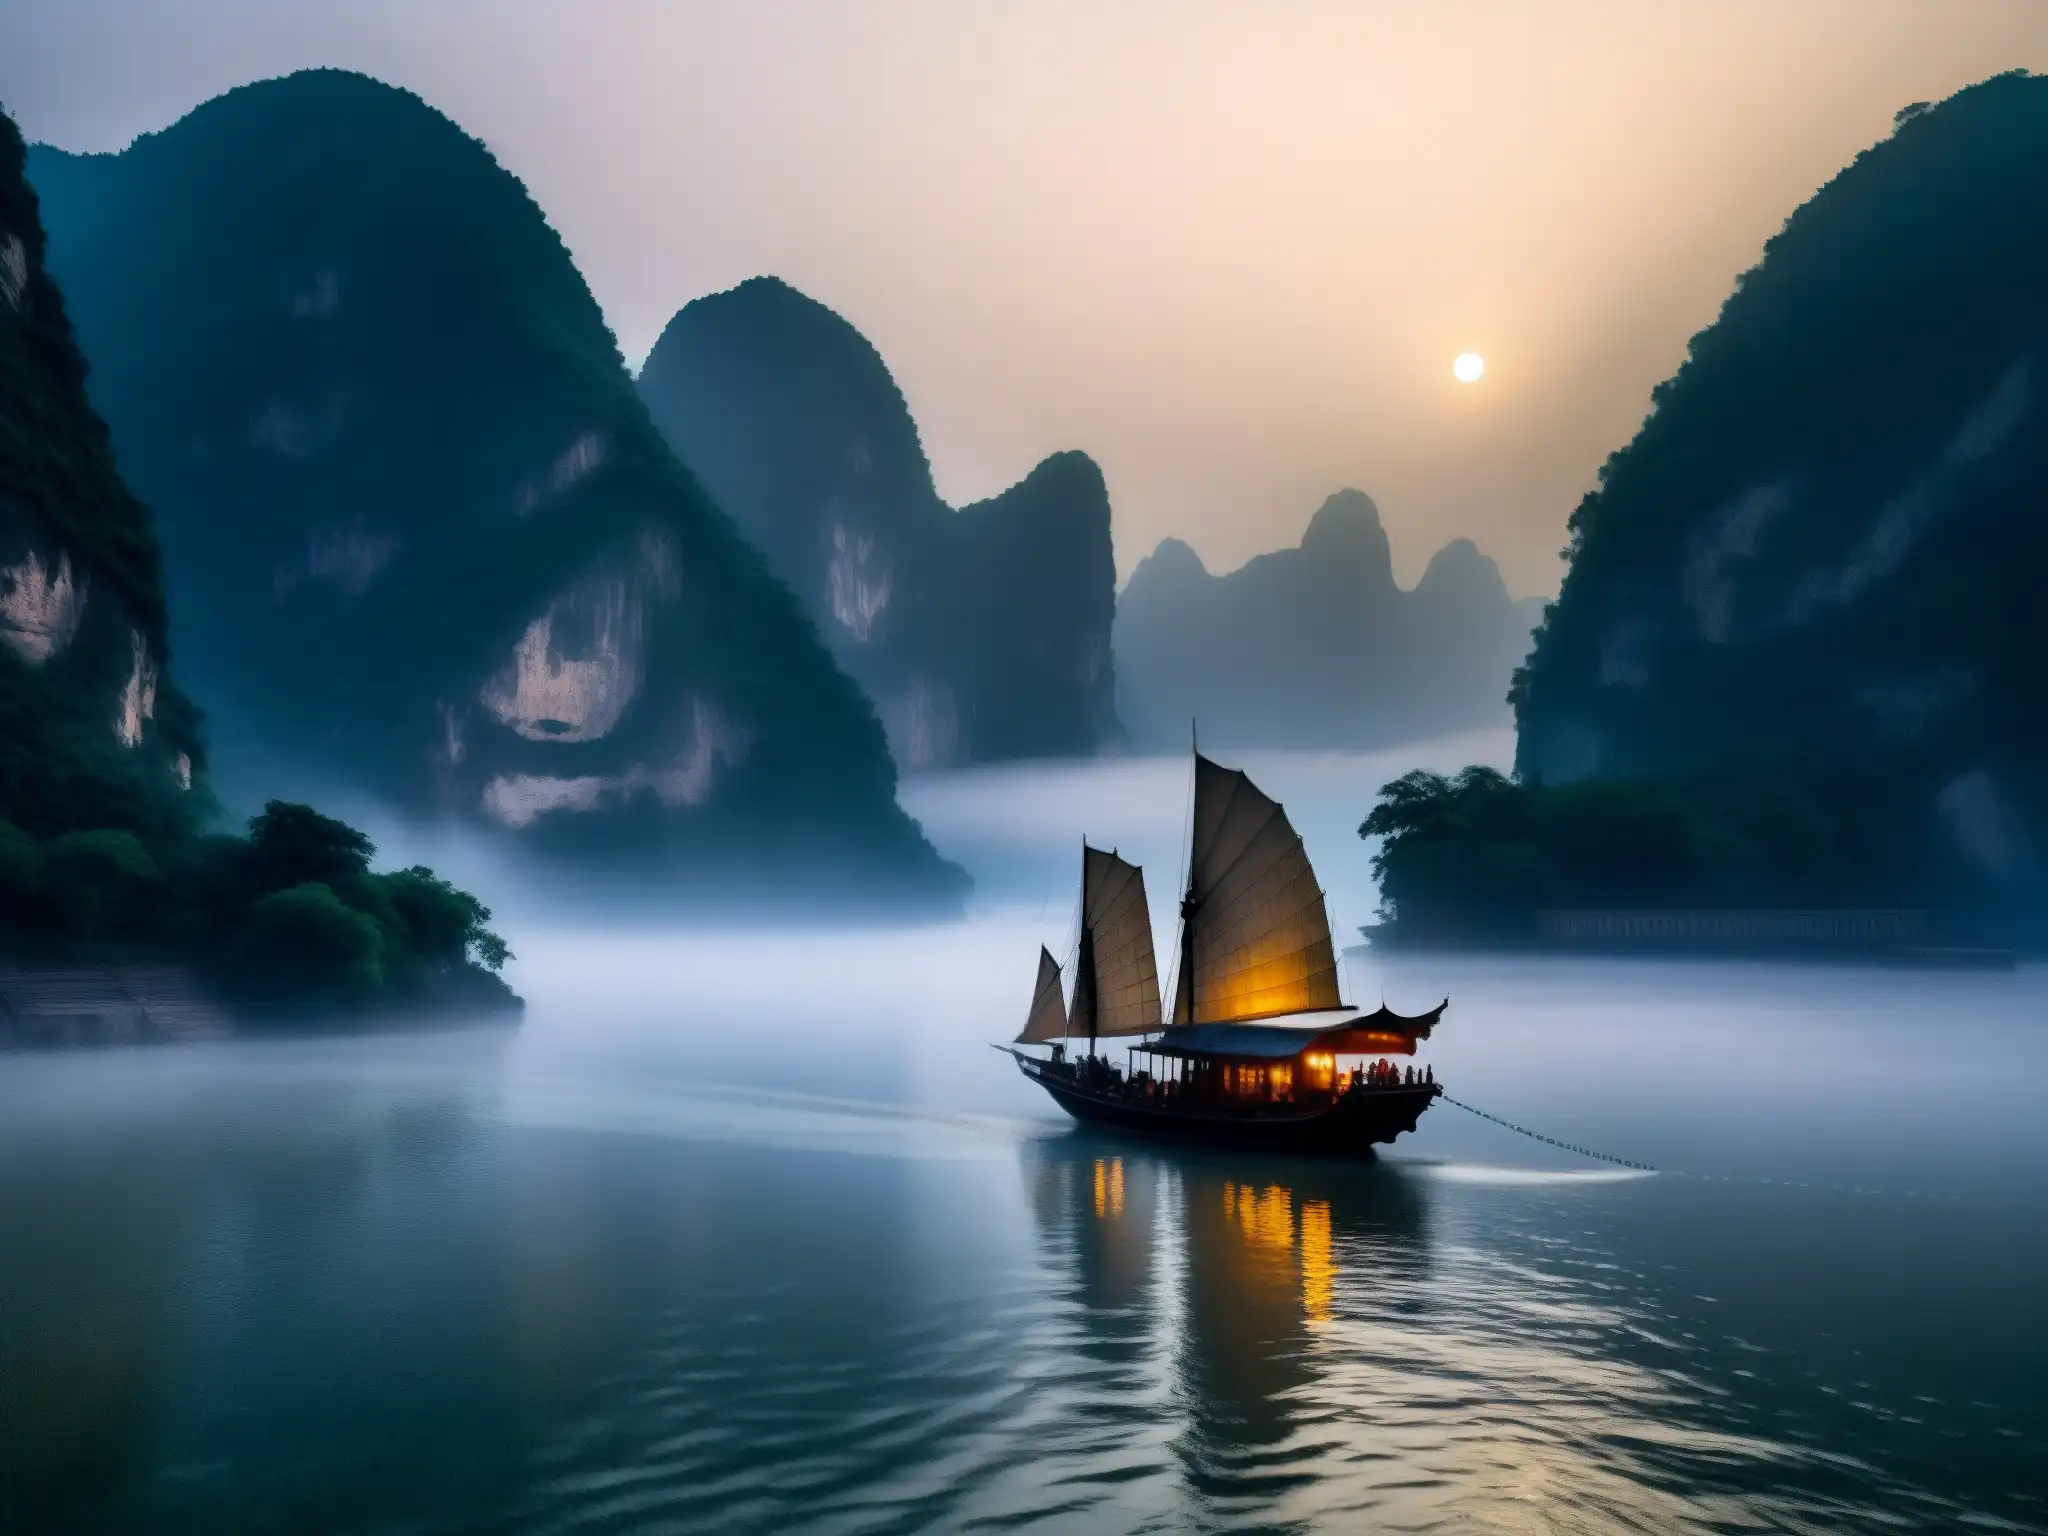 Un barco fantasma navega misteriosamente en la niebla del río Yangtsé, iluminado por linternas, creando una atmósfera etérea y misteriosa